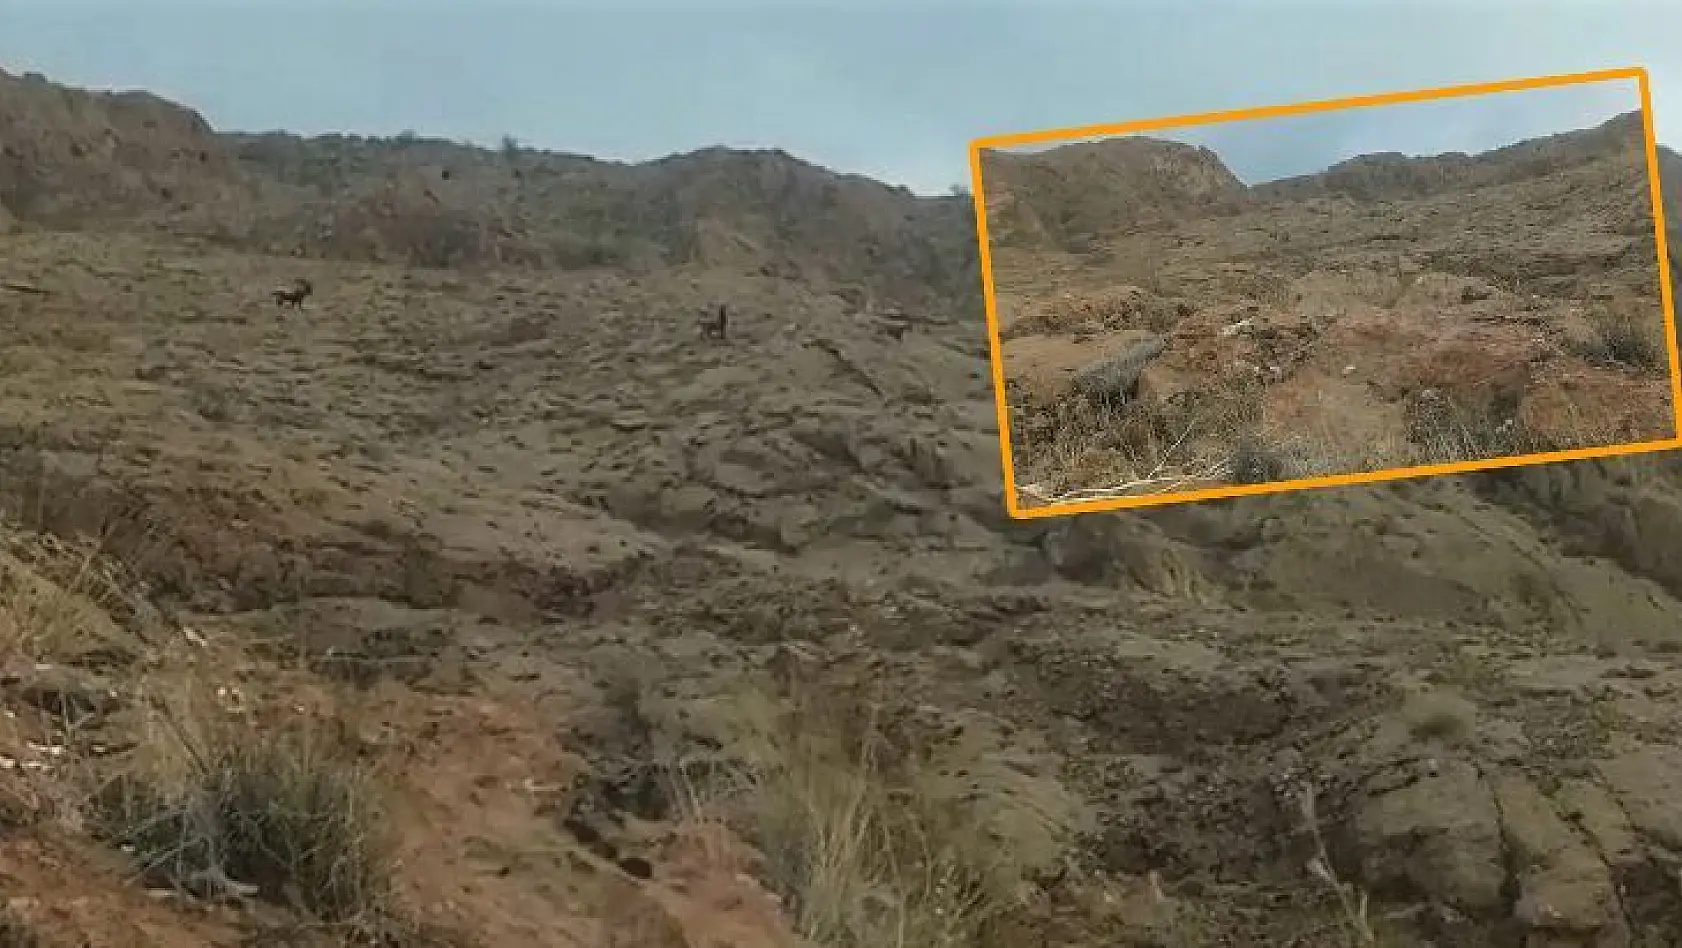 Elazığ'da Koruma Altındaki Dağ Keçileri Sürü Halinde Görüntülendi